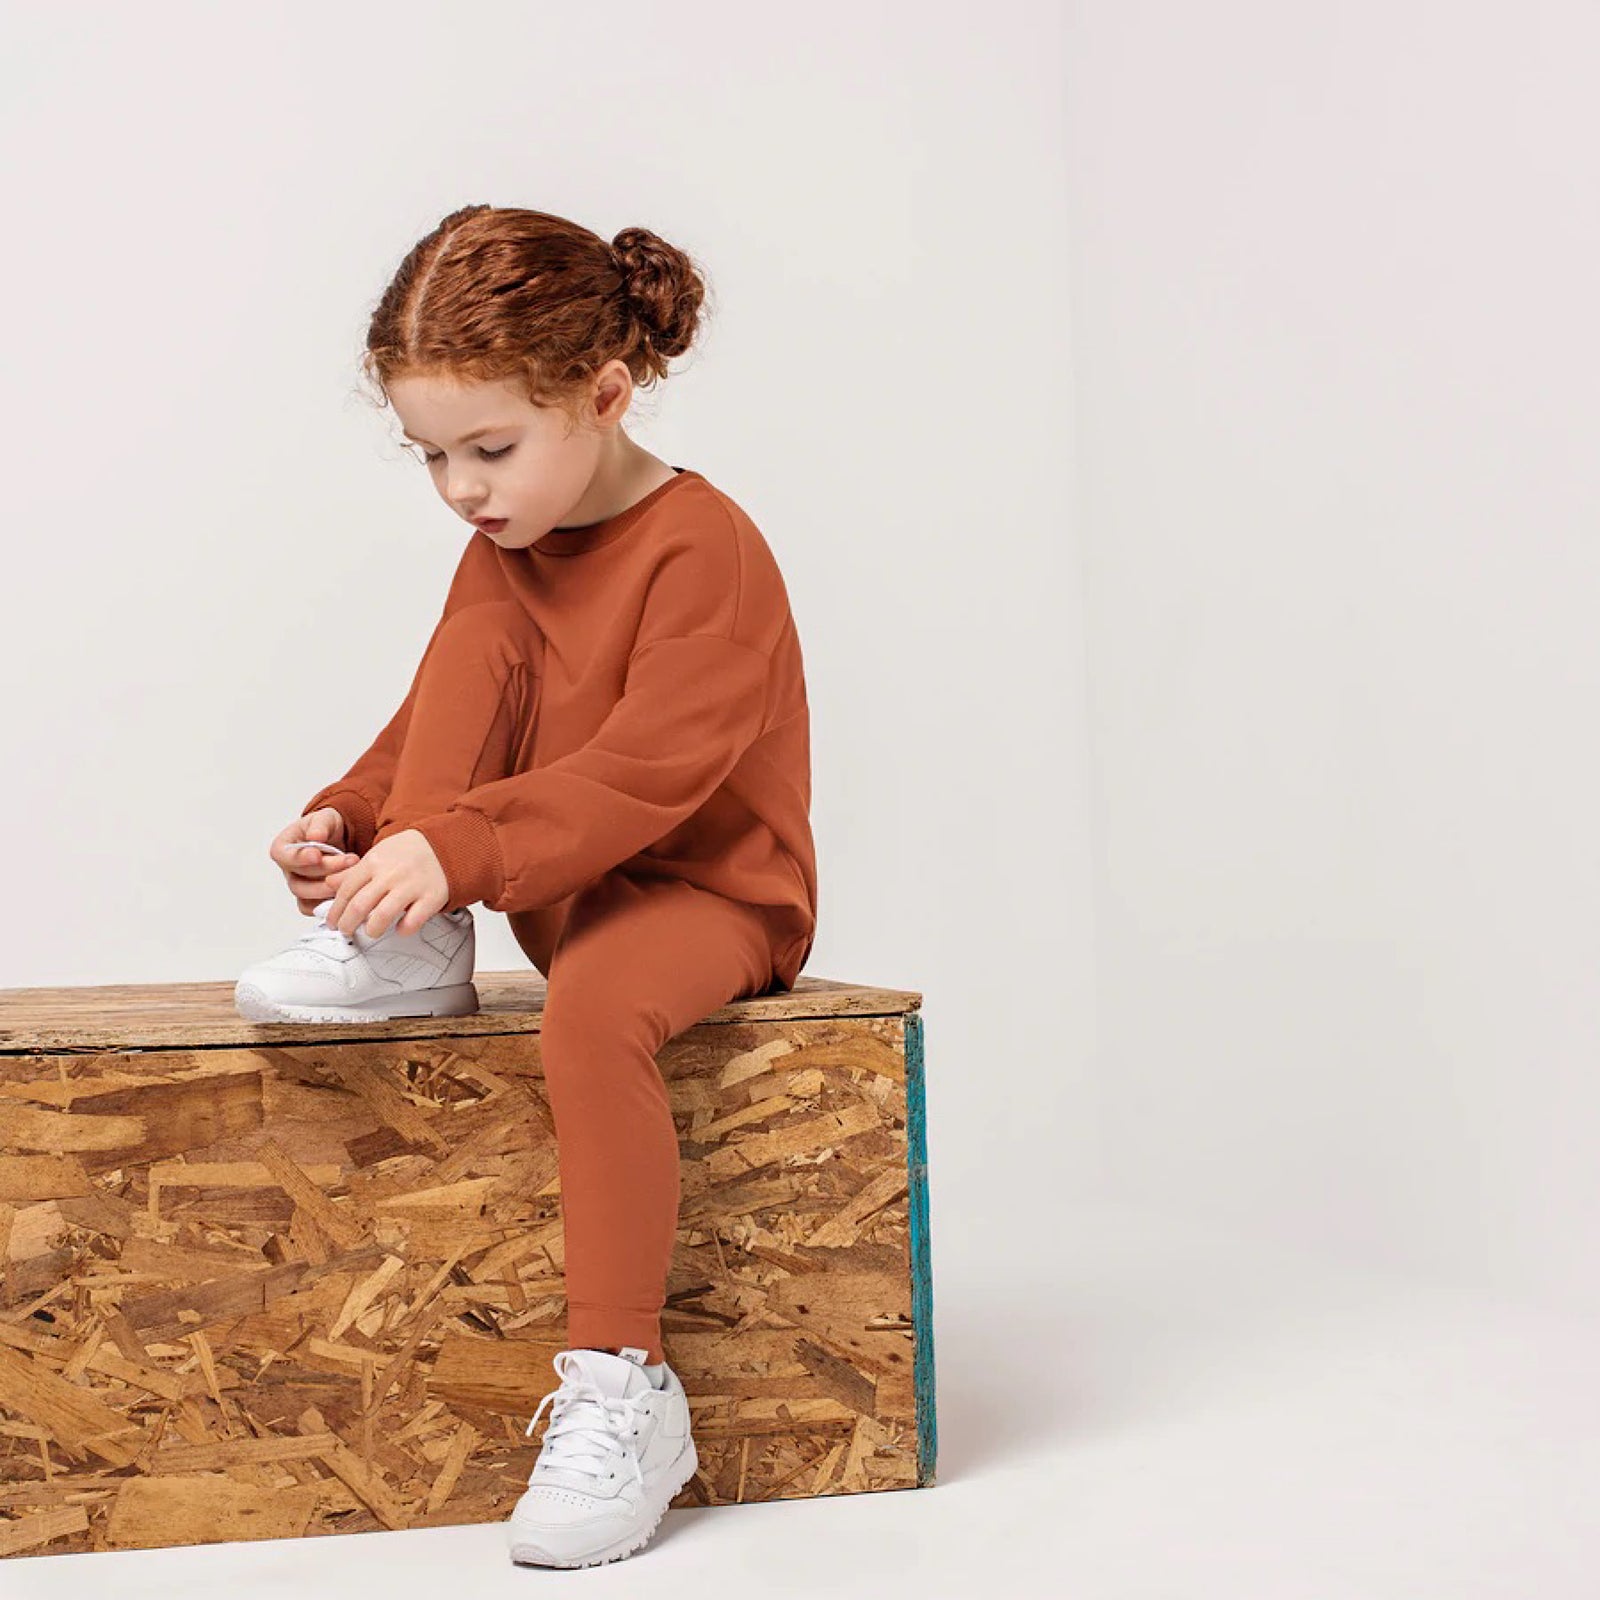 Brown short legging in irregular rib knit, child - Souris Mini